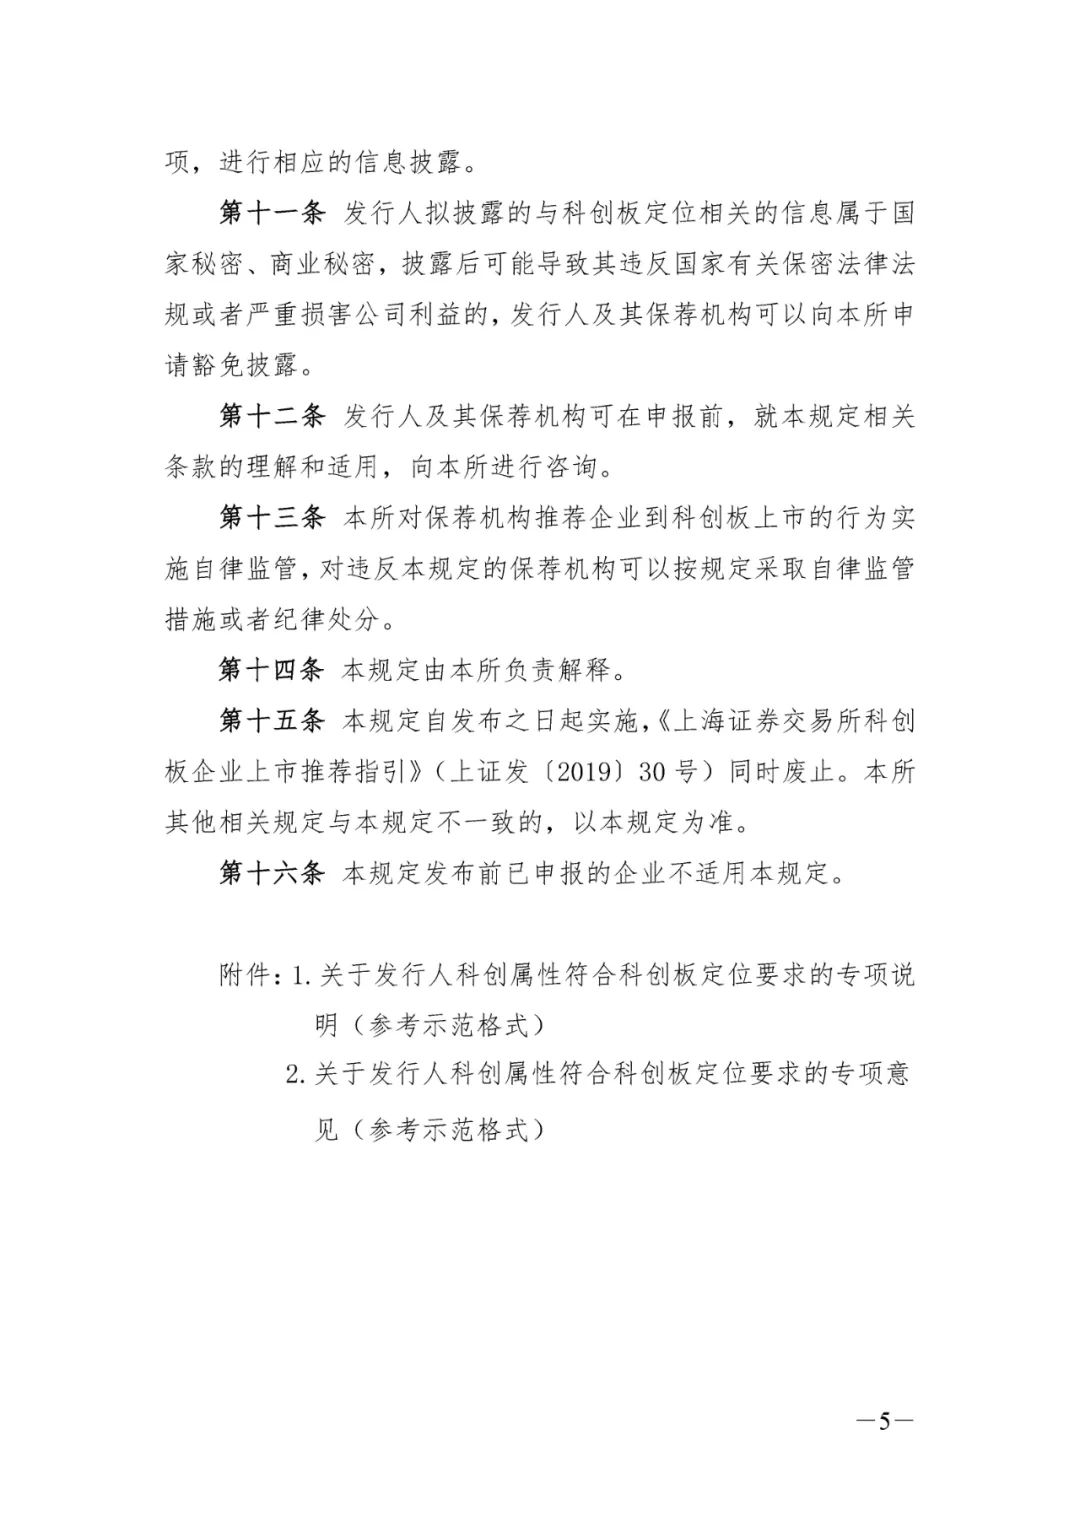 关于发布《上海证券交易所科创板企业发行上市申报及推荐暂行规定》的通知